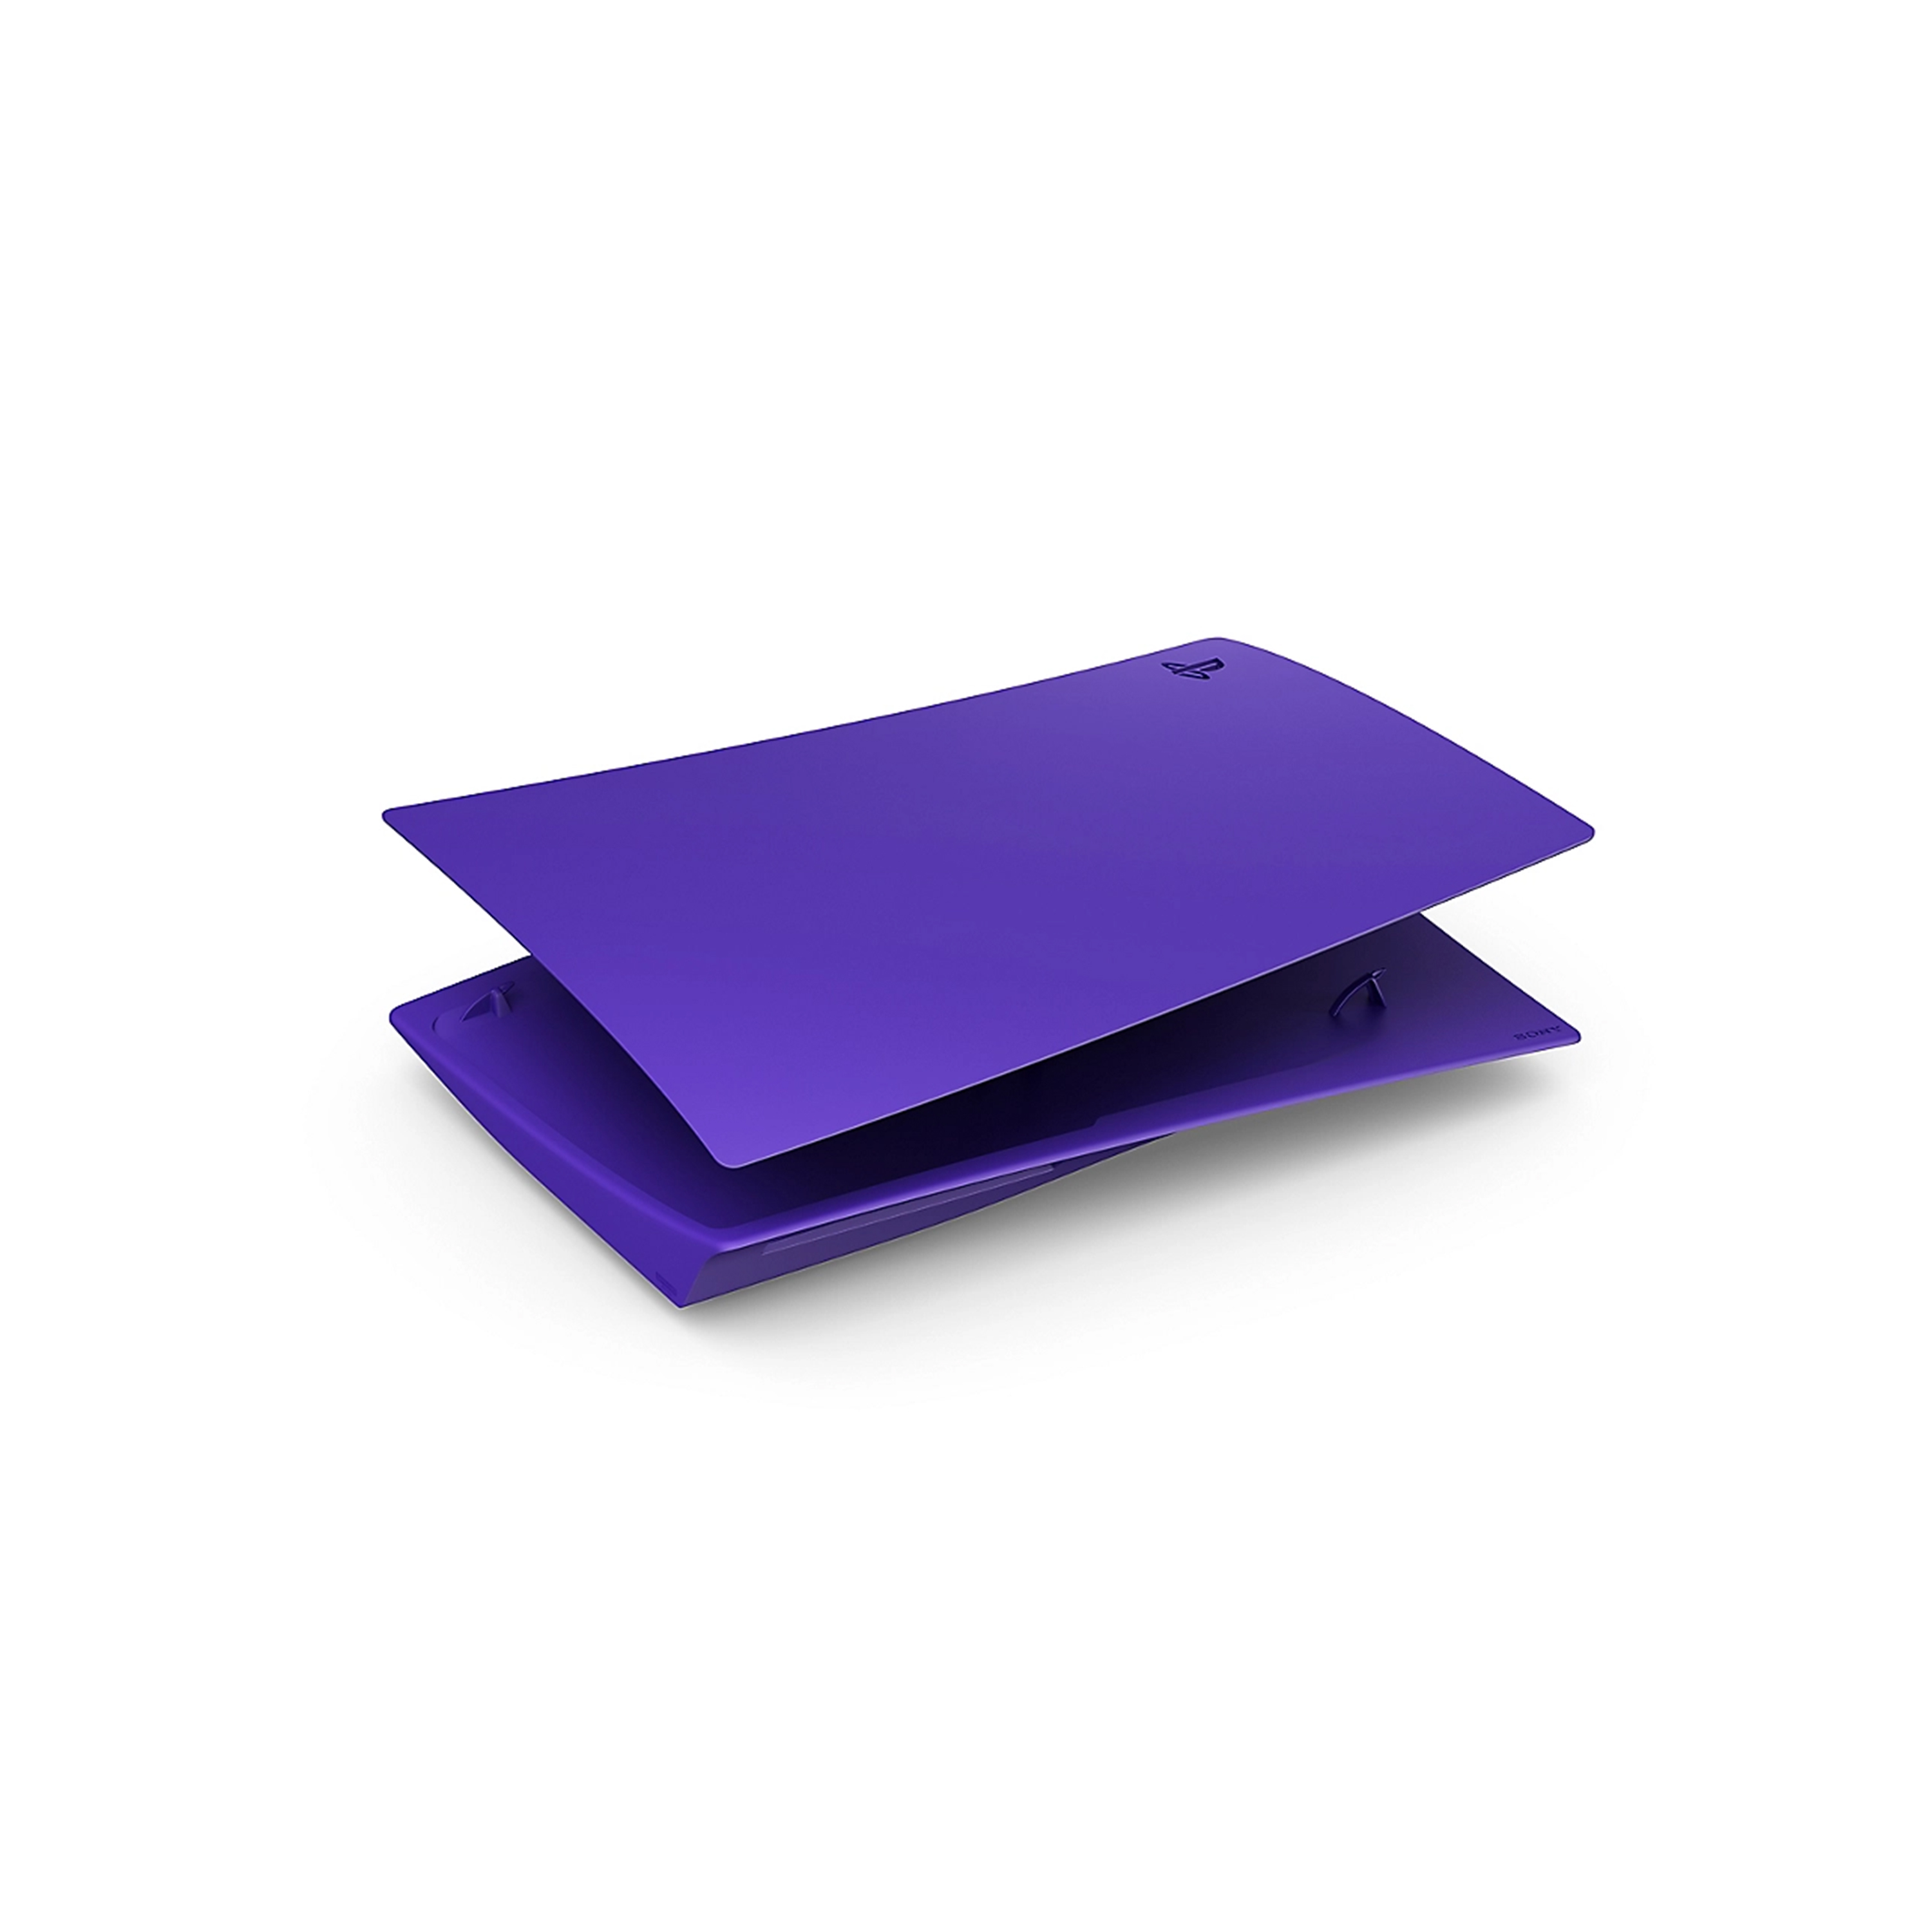 銀河紫PlayStationR5 光碟版主機護蓋平放圖